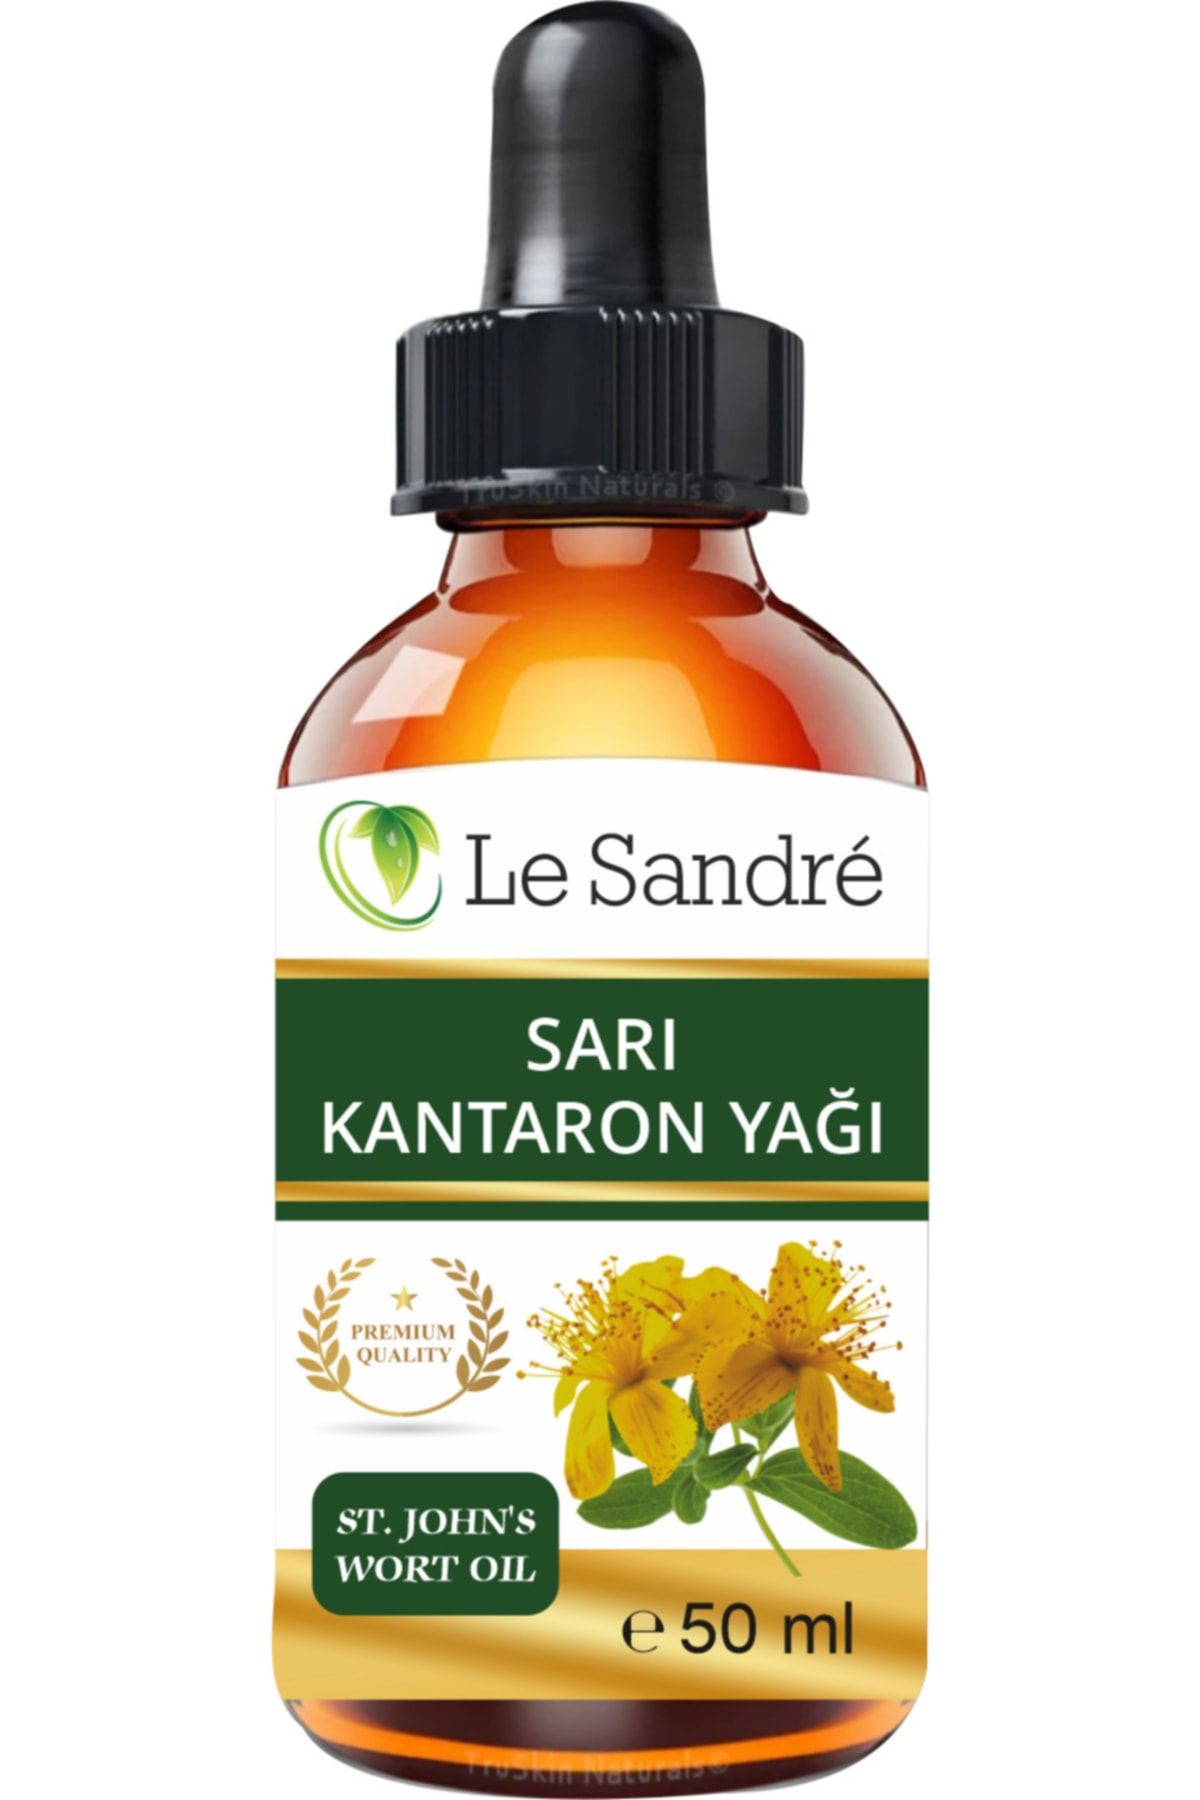 Le'Sandre Organics Sarı Kantaron Yağı 50 ml